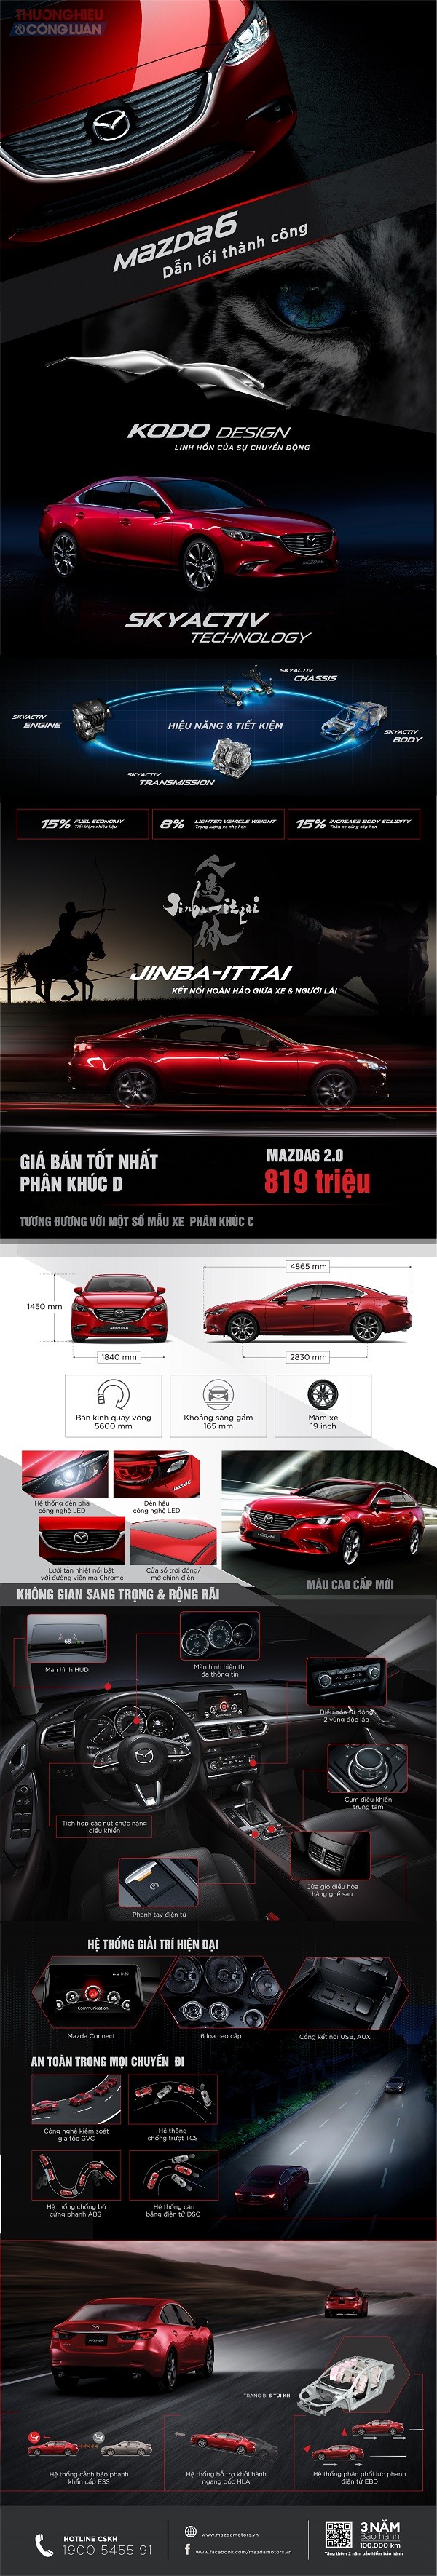 Mazda6 ưu đãi đến 35 triệu đón Lễ hội hoa anh đào - Hình 1